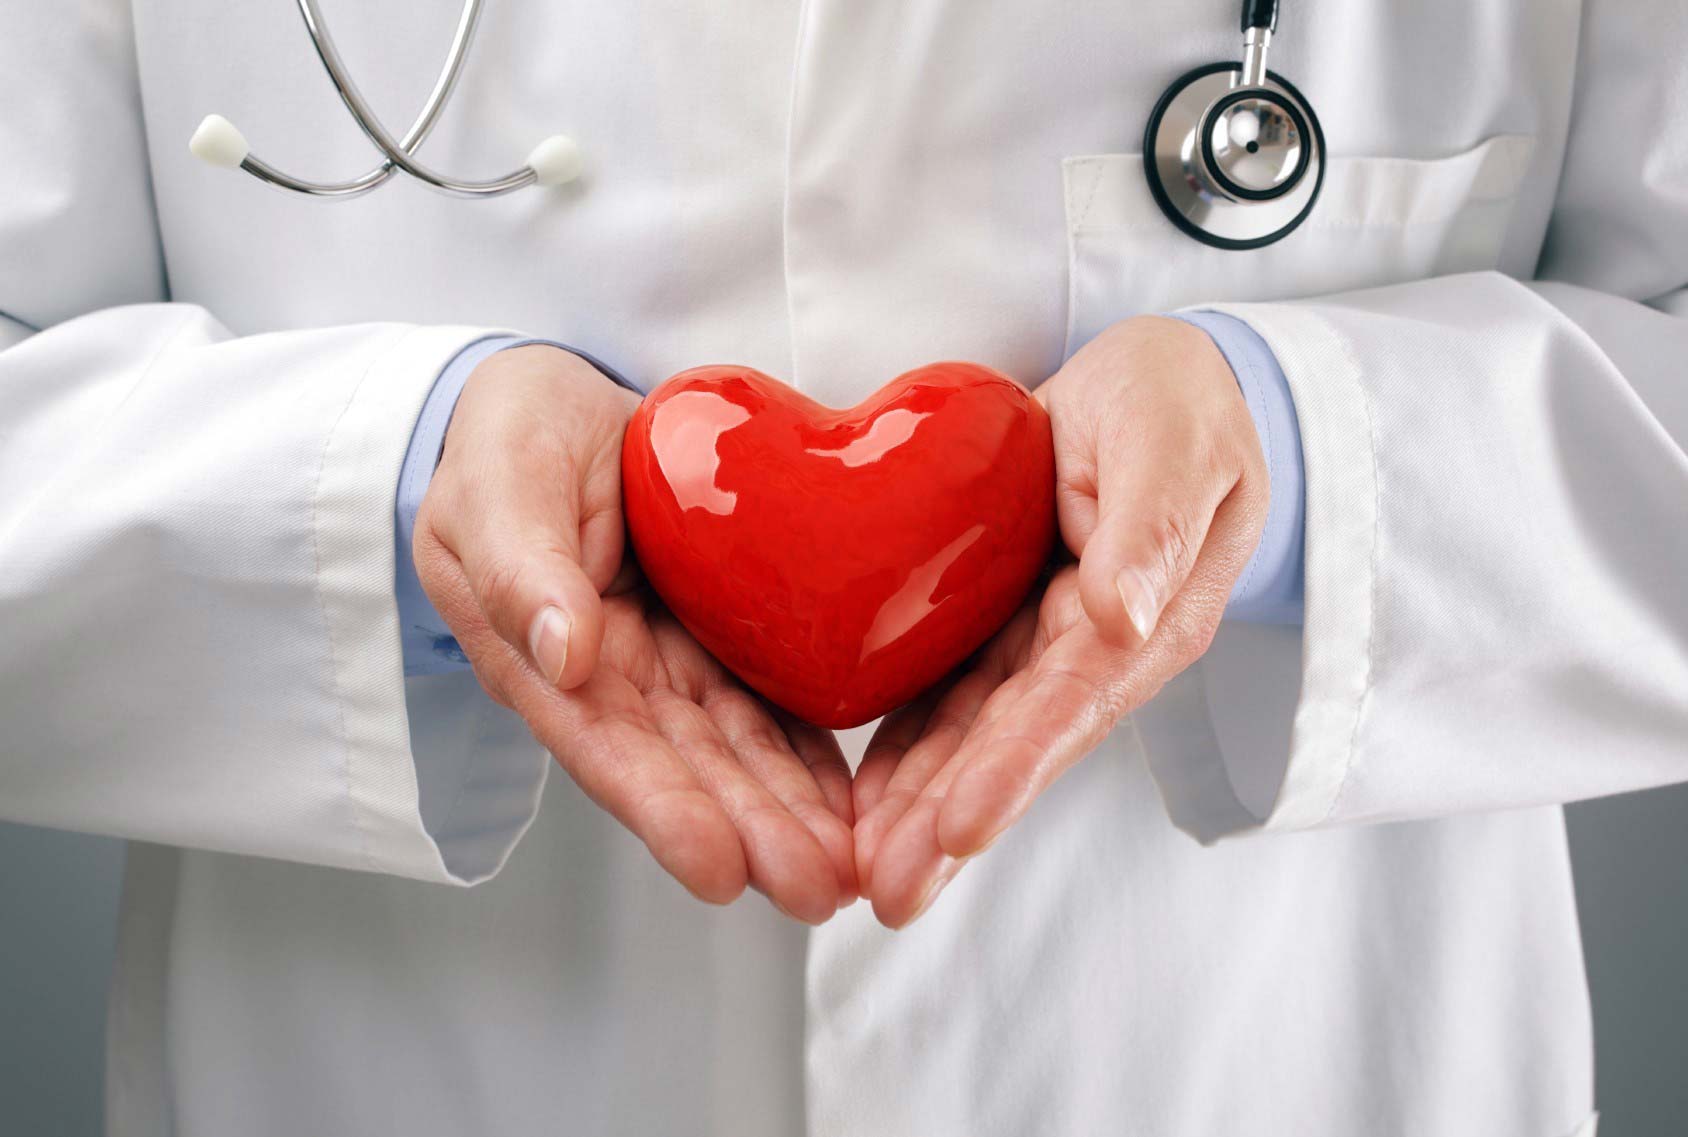 Δείκτης Framingham: Τι είναι και πώς χρησιμοποιείται για την πρόβλεψη καρδιαγγειακών νόσων